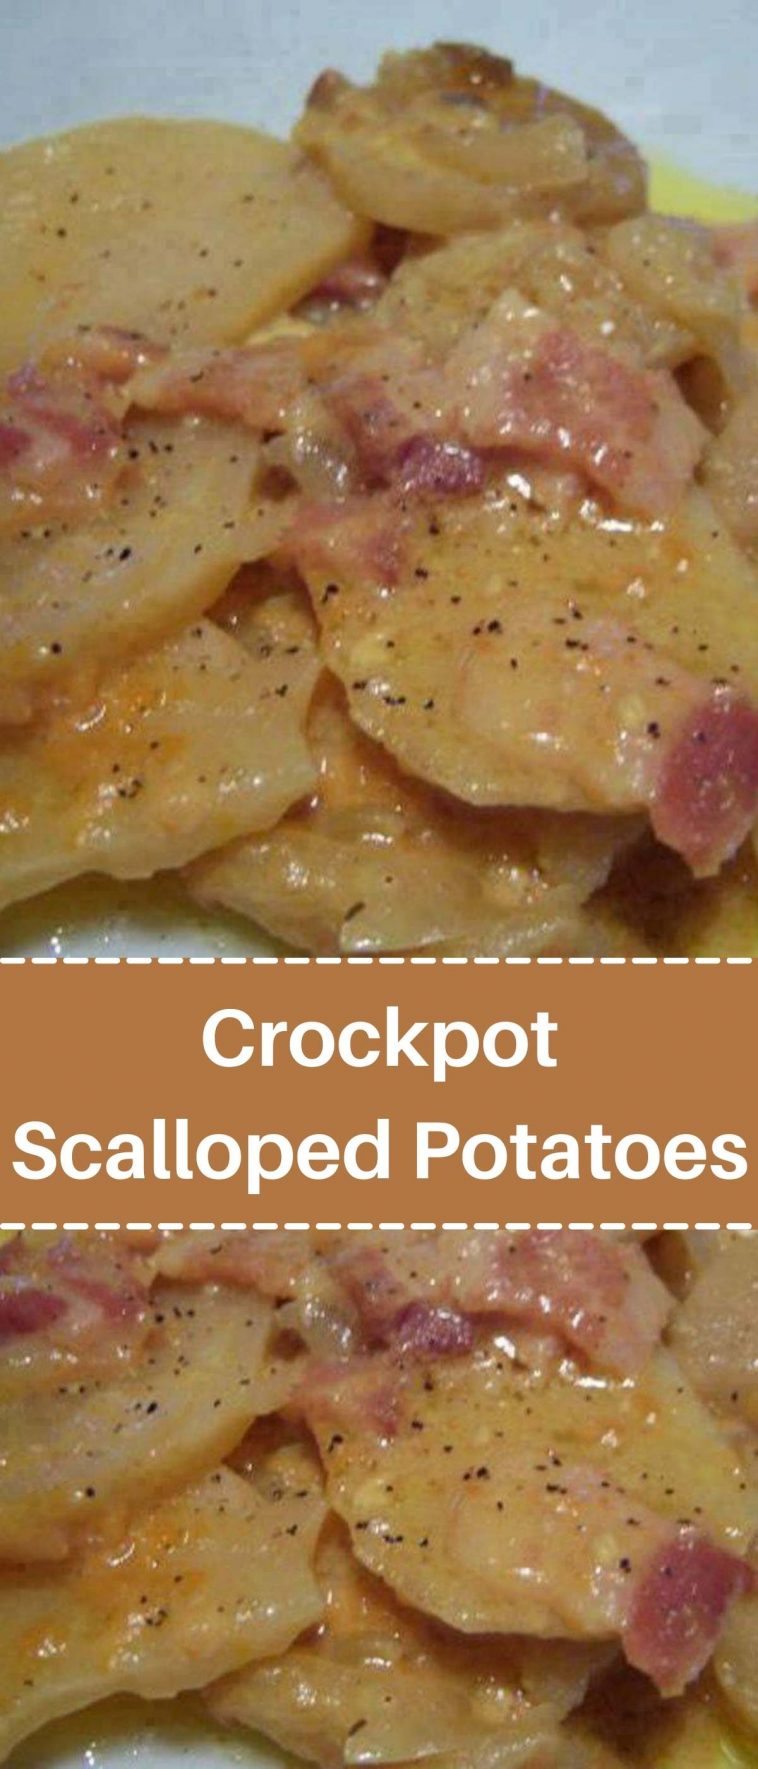 Crockpot Scalloped Potatoes